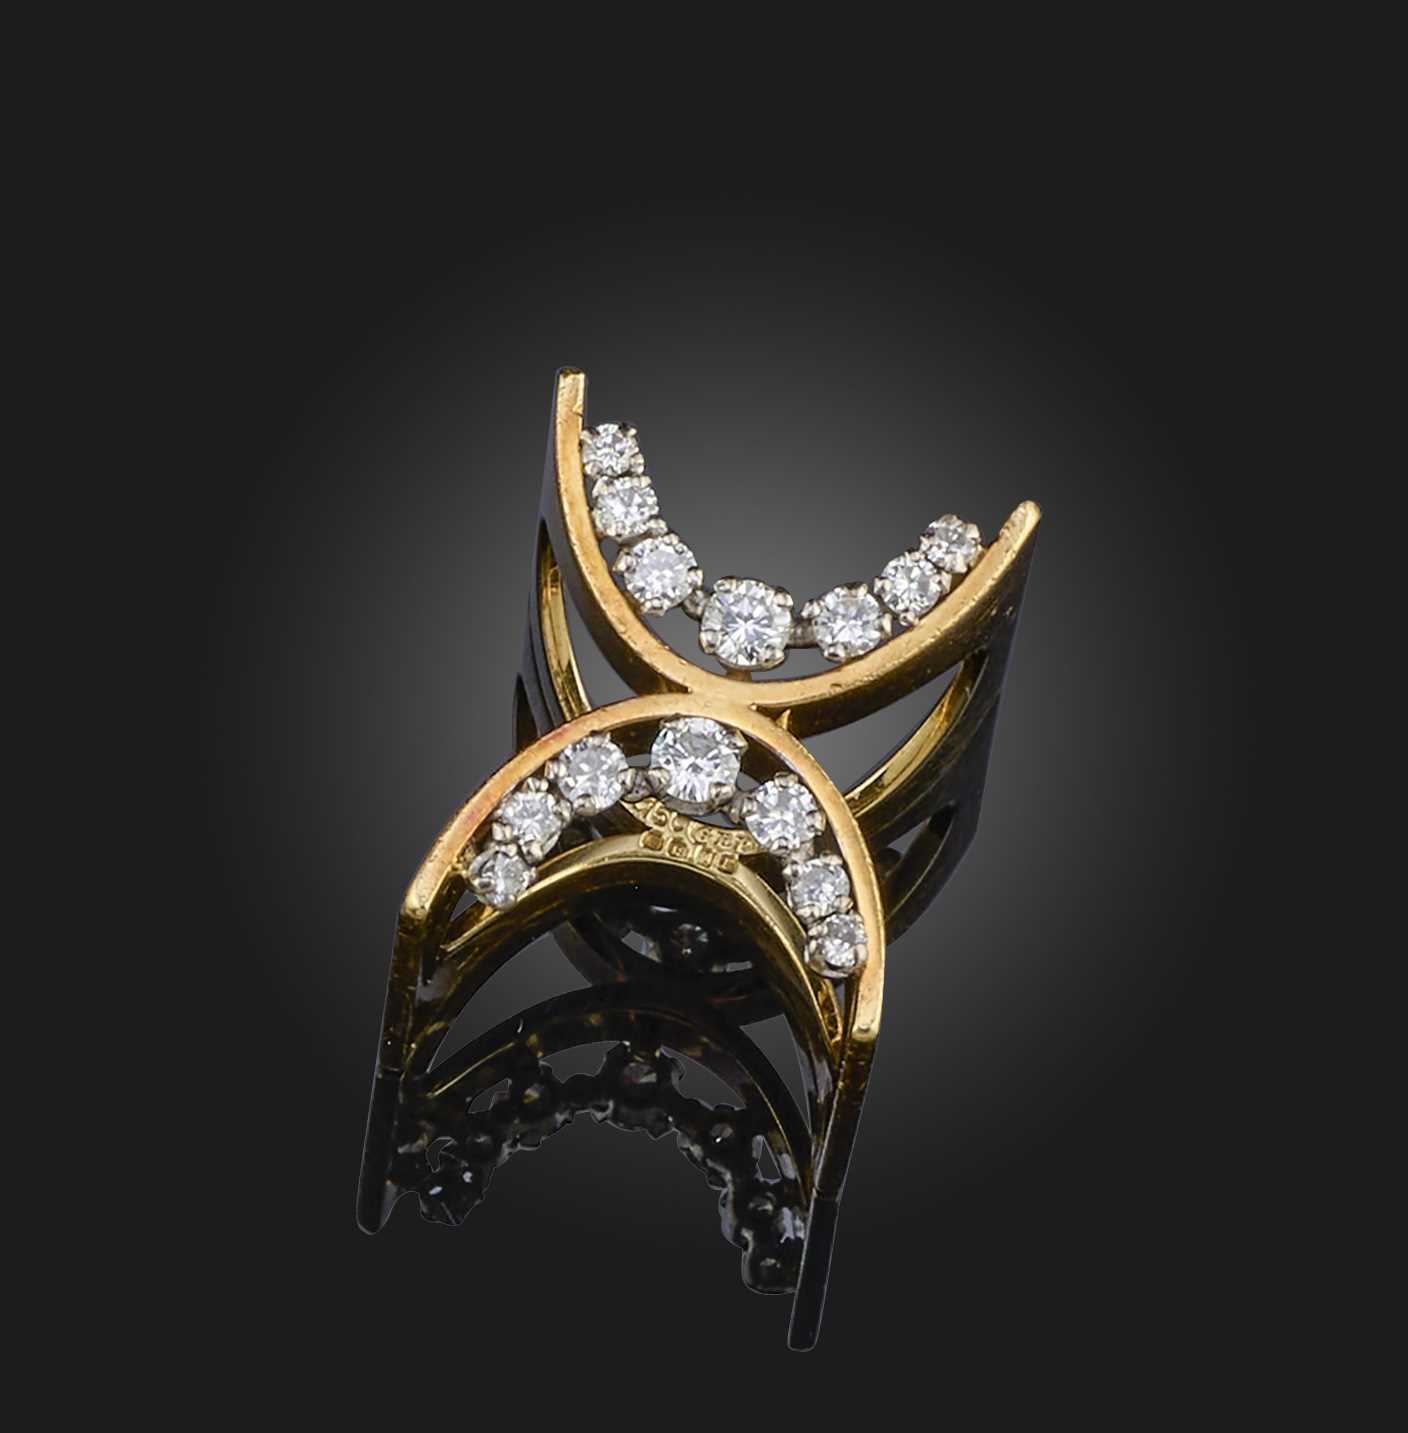 Φ Φ Gilian Packard, a diamond ring of sculptural design, the connecting arcs each set with graduated